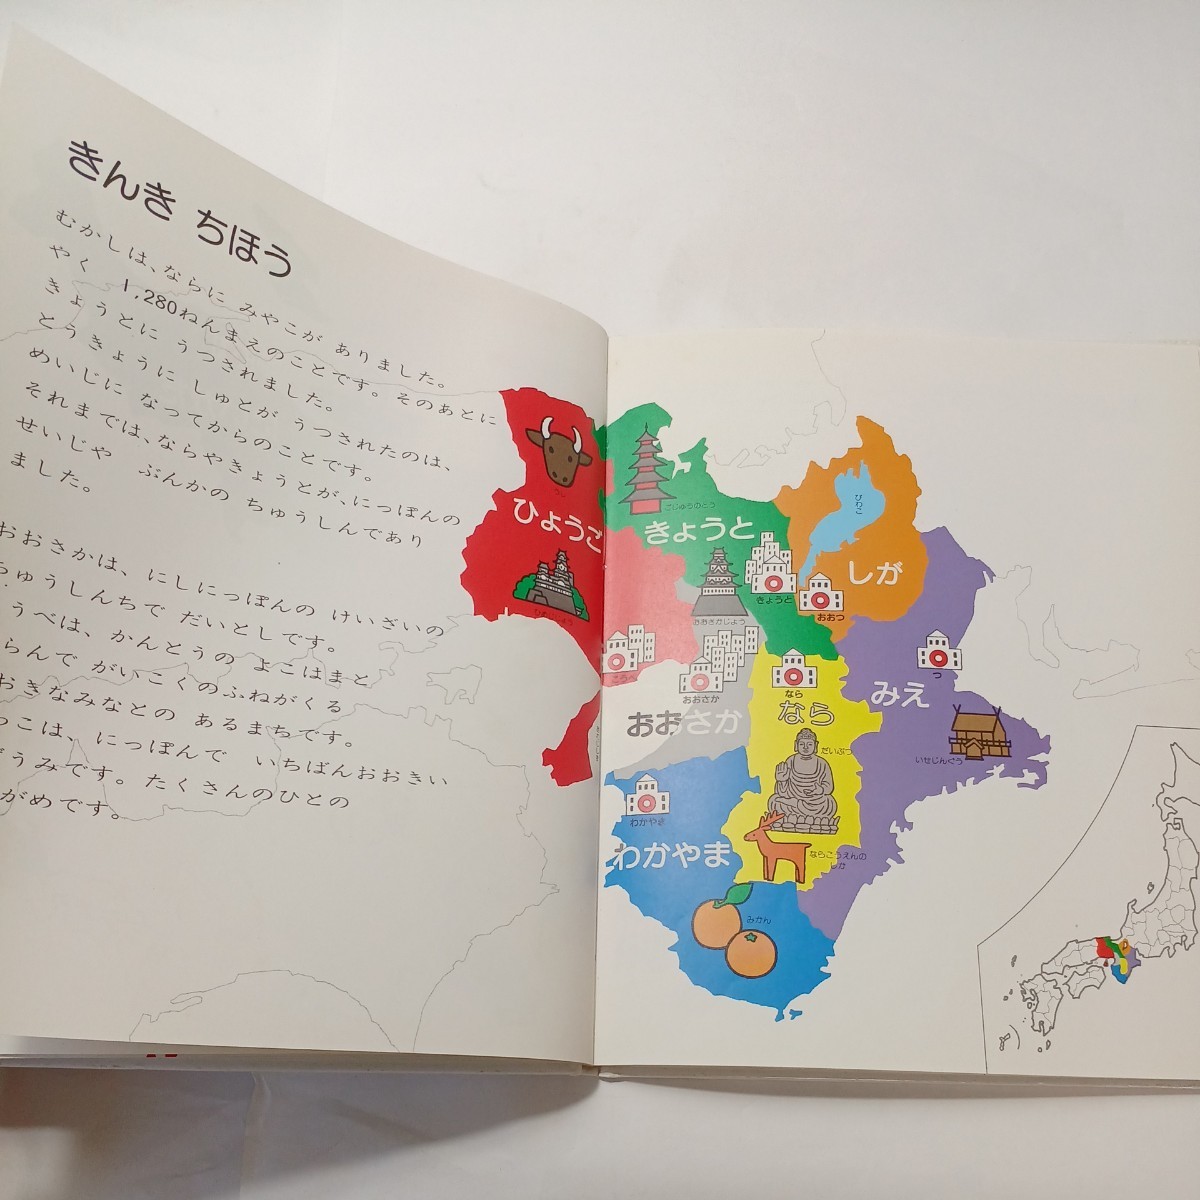 zaa-491♪にっぽん地図絵本: こどもがはじめてであう　 とだ こうしろう(著)　 戸田デザイン研究室 (1991/09)　